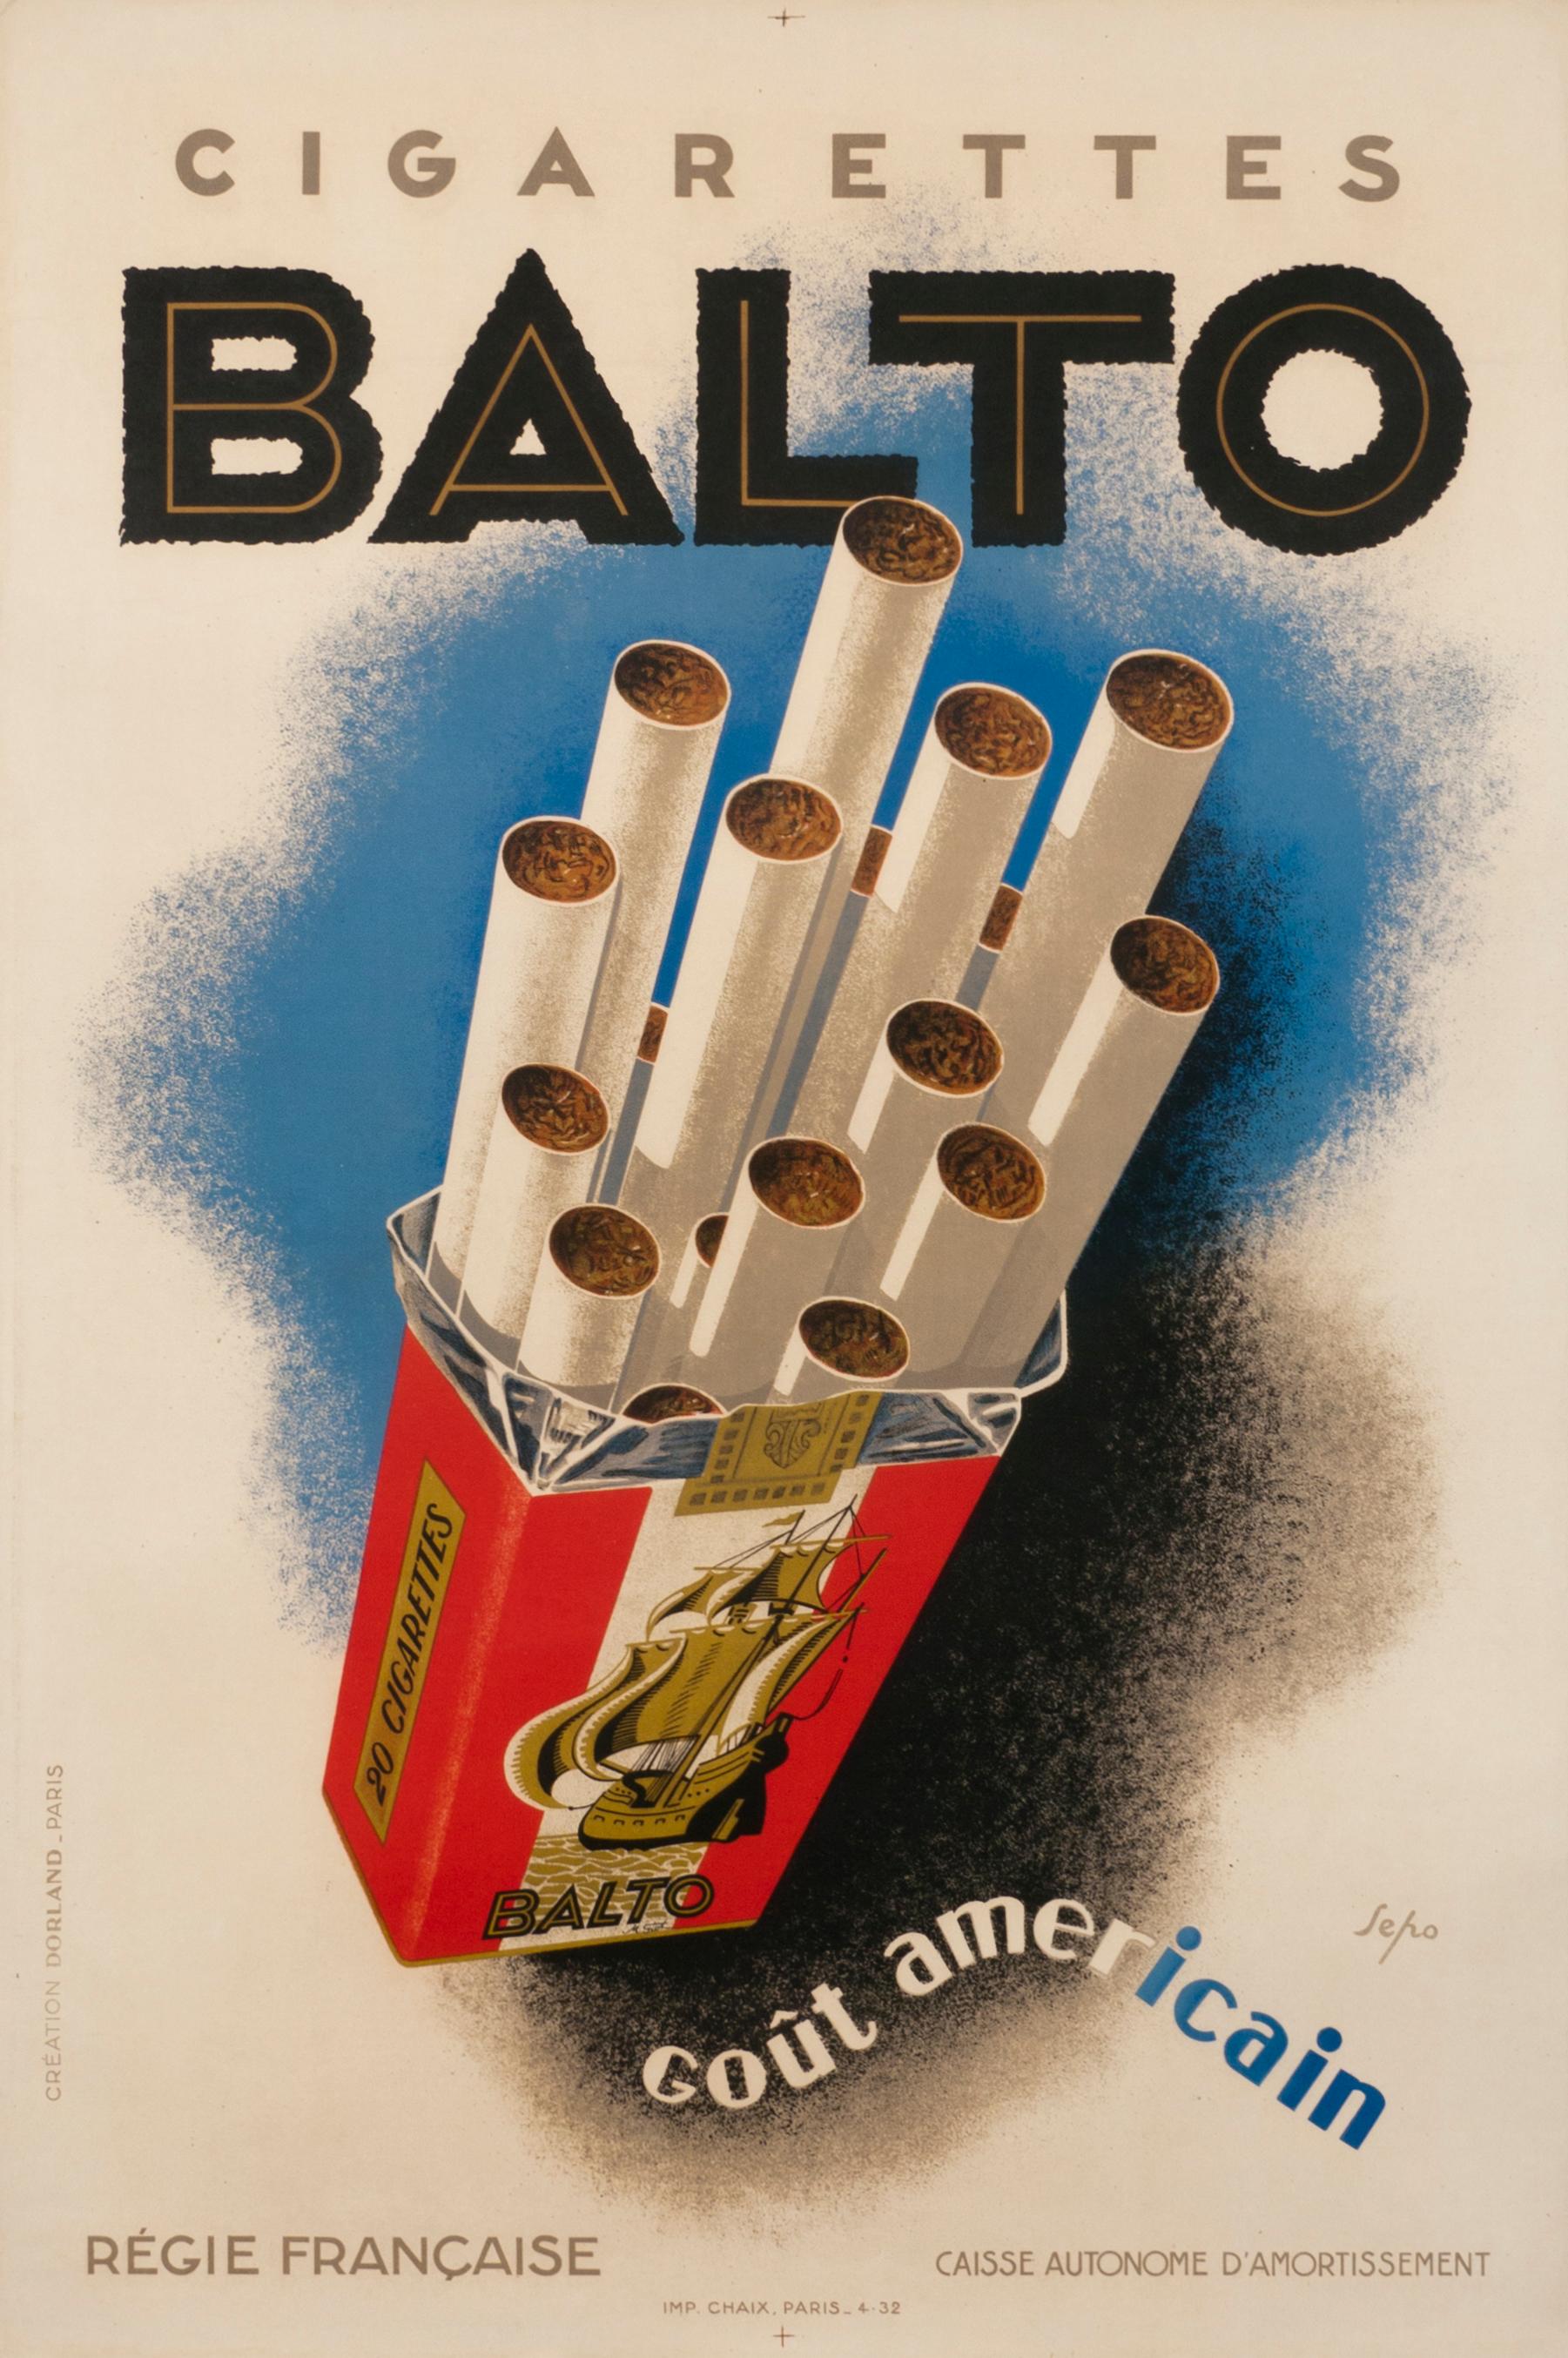 "Balto Cigarettes" Original Vintage Cigarette Poster - Print by Severo "Sepo" Pozzati